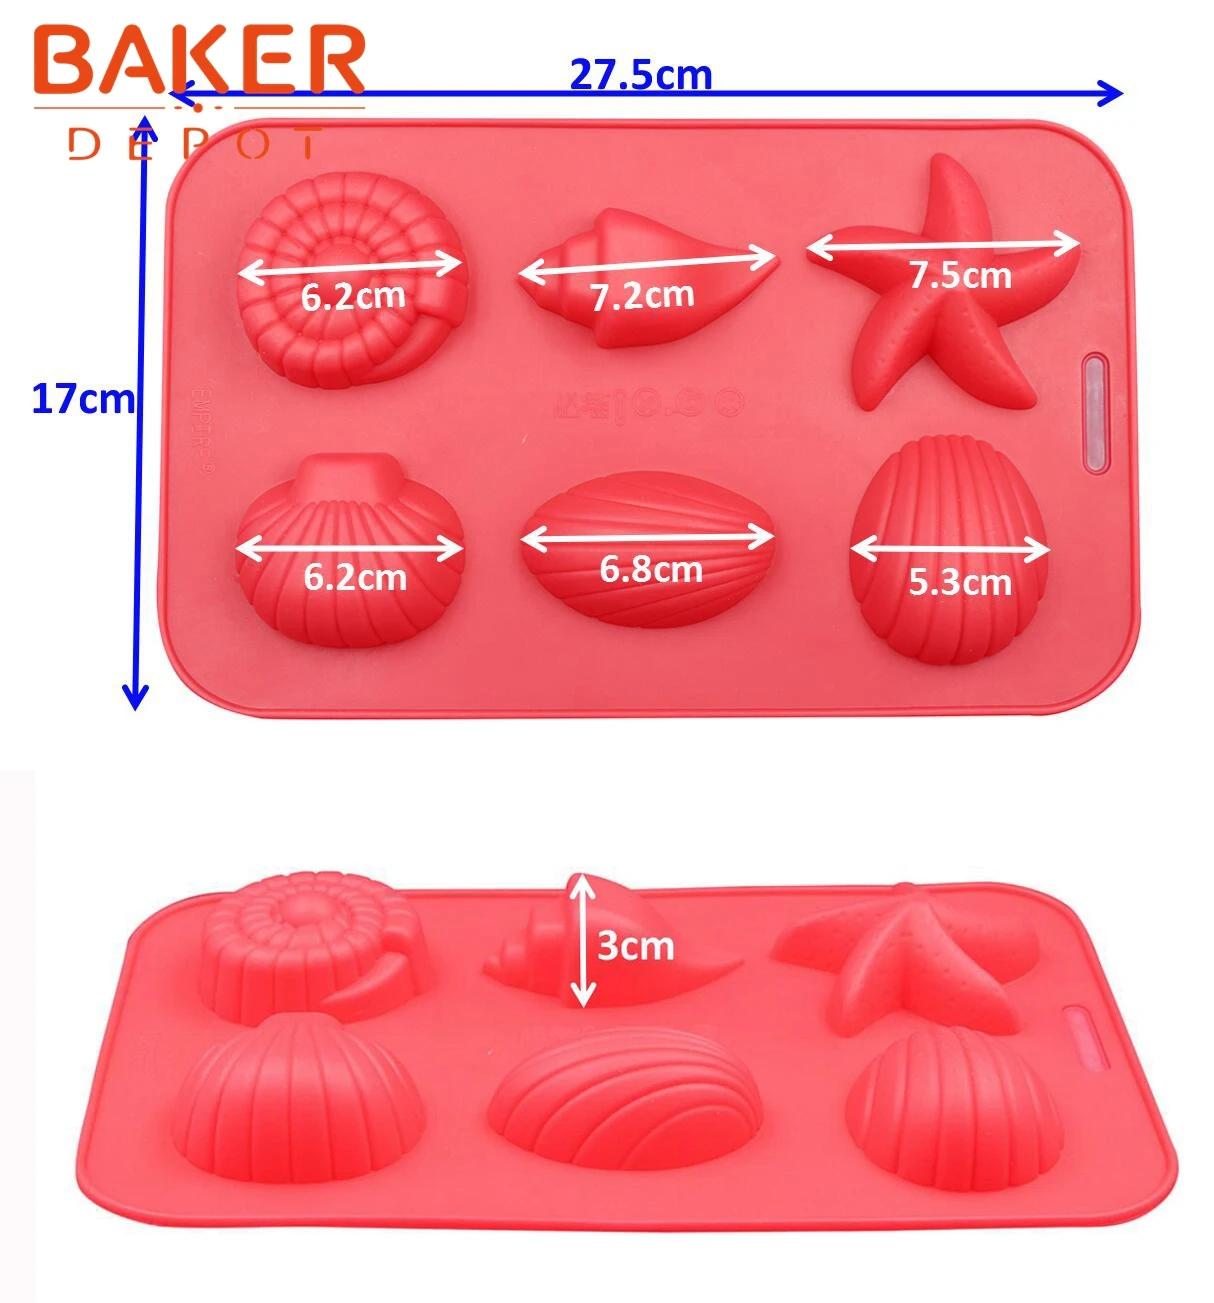 BAKER DEPOT форма звезды силиконовая форма для торта Пудинг jello формы 6 отверстий силиконовая форма для мороженого, шоколада раковина для рыбы мыло ручной работы плесень